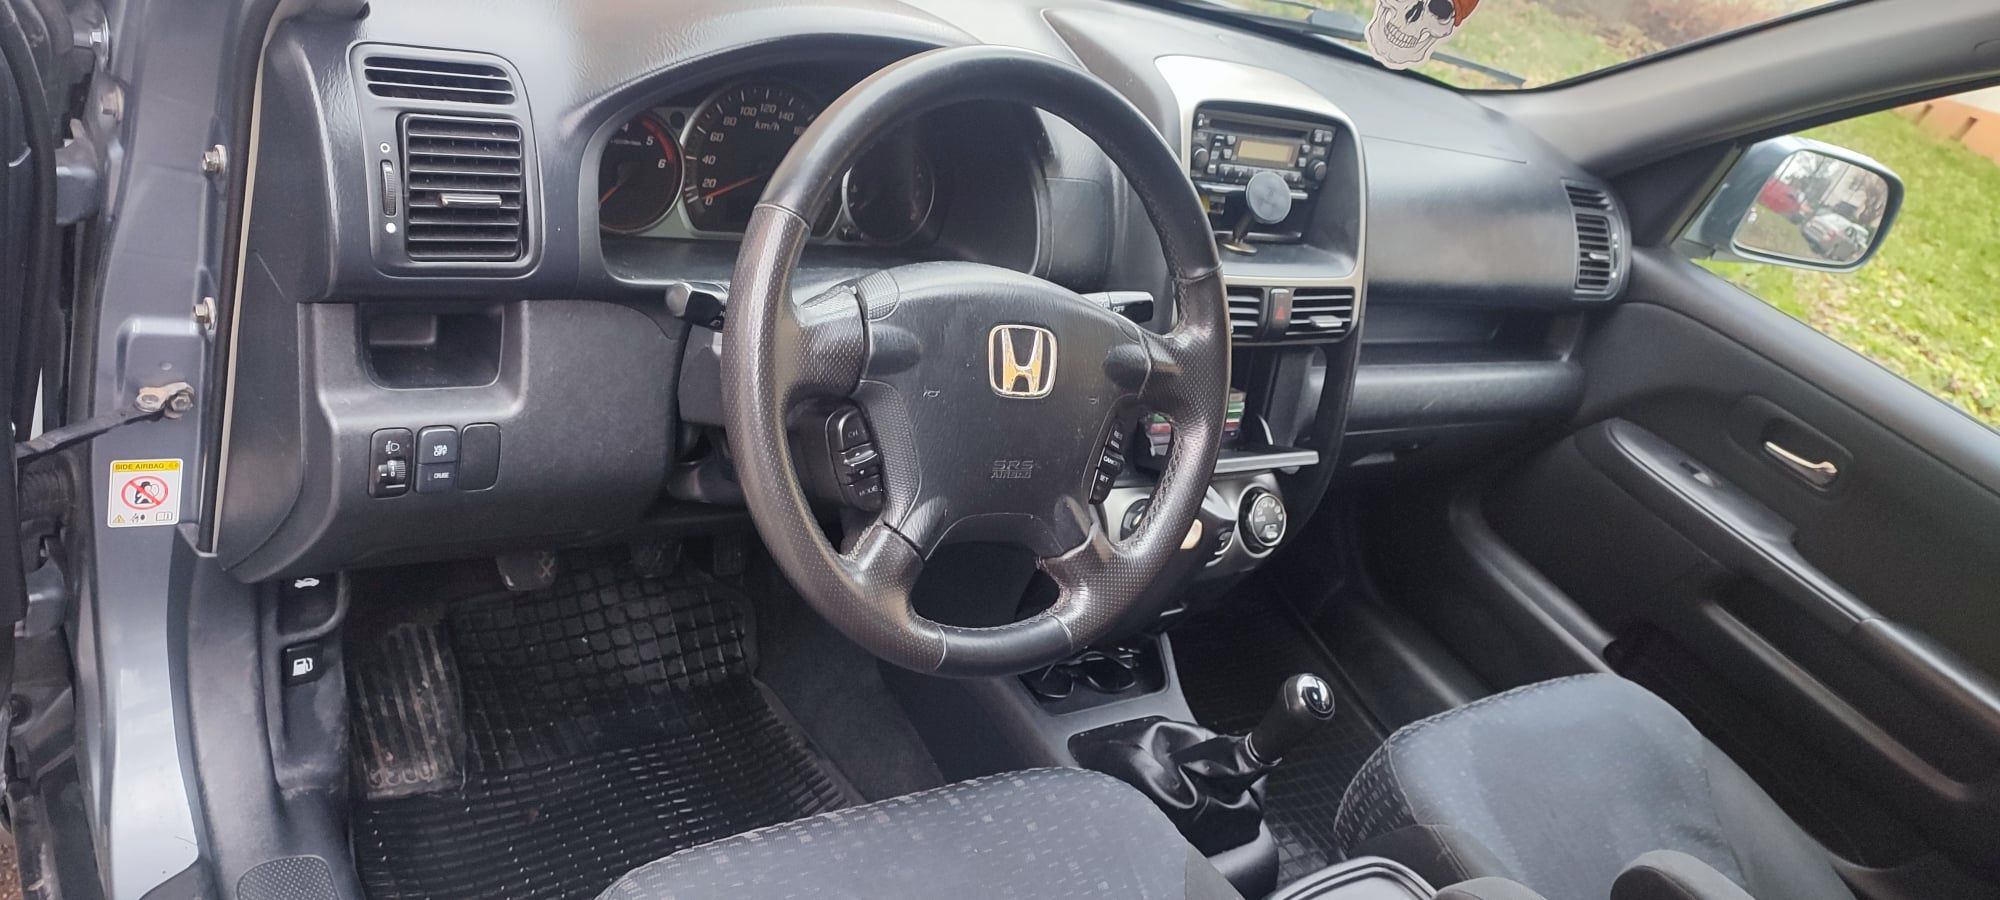 Honda CR-V 2005 r.